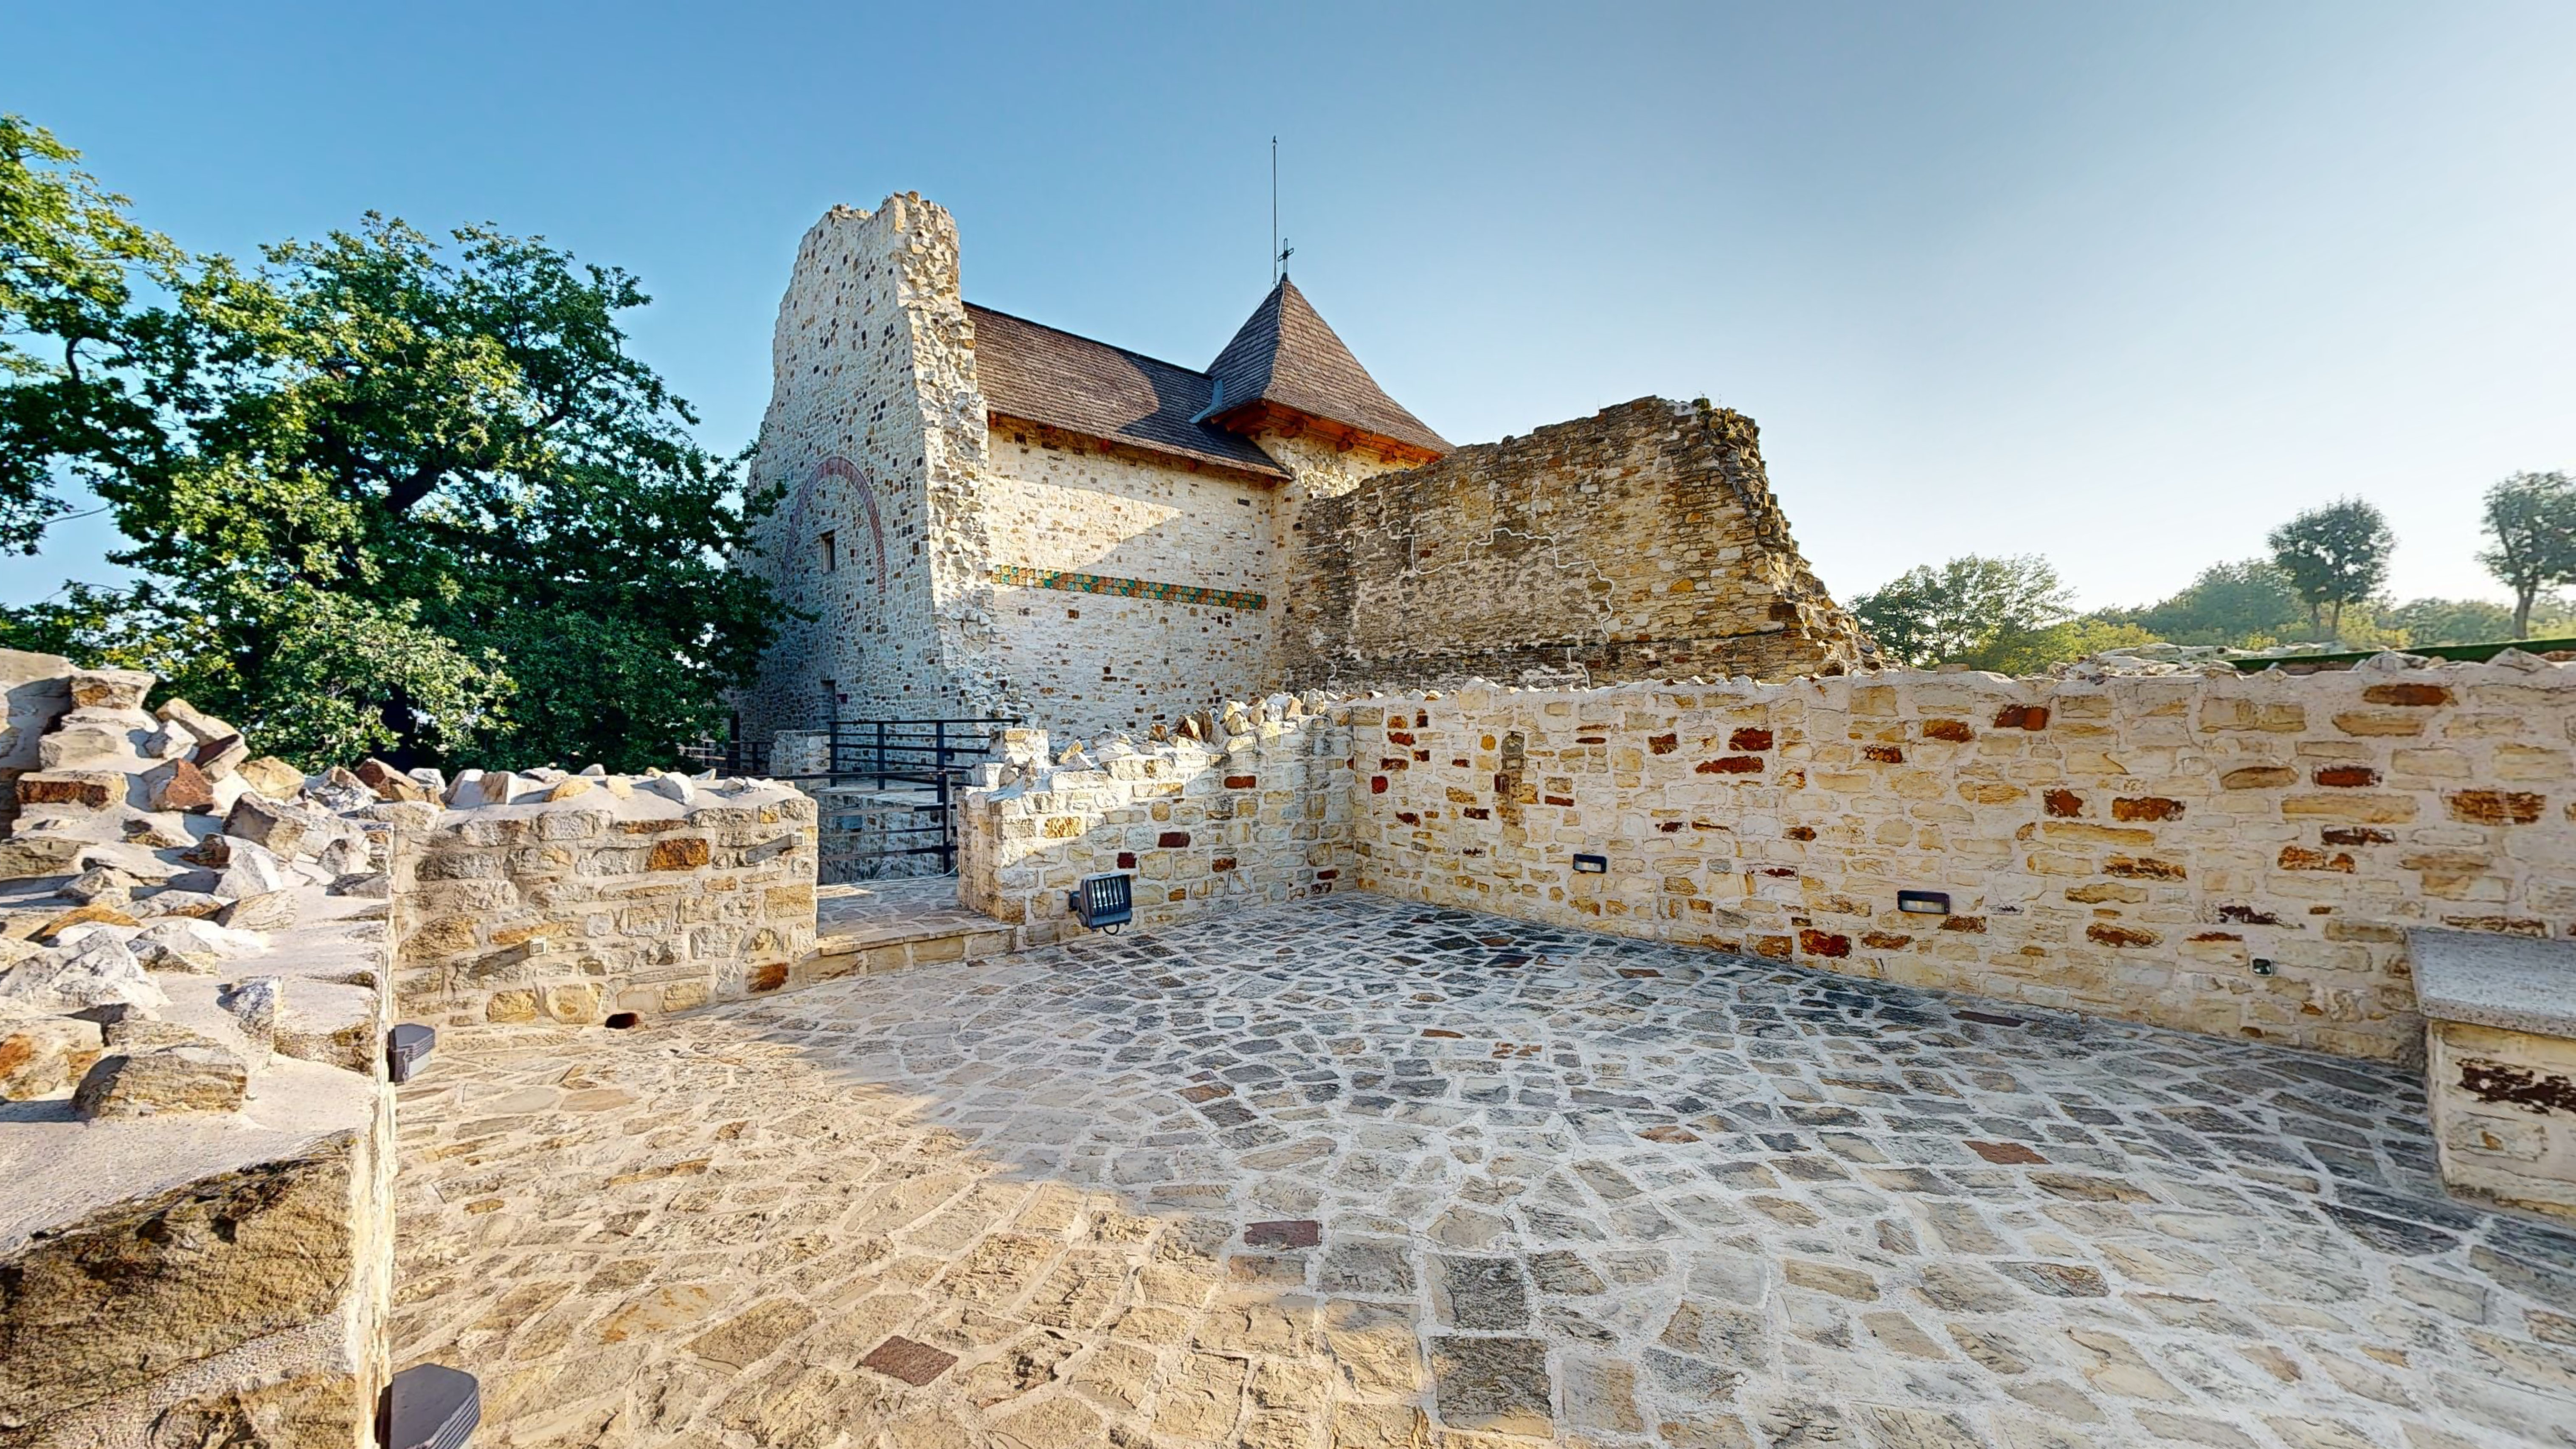 Cetatea-de-Scaun-a-Sucevei-10312023_155741